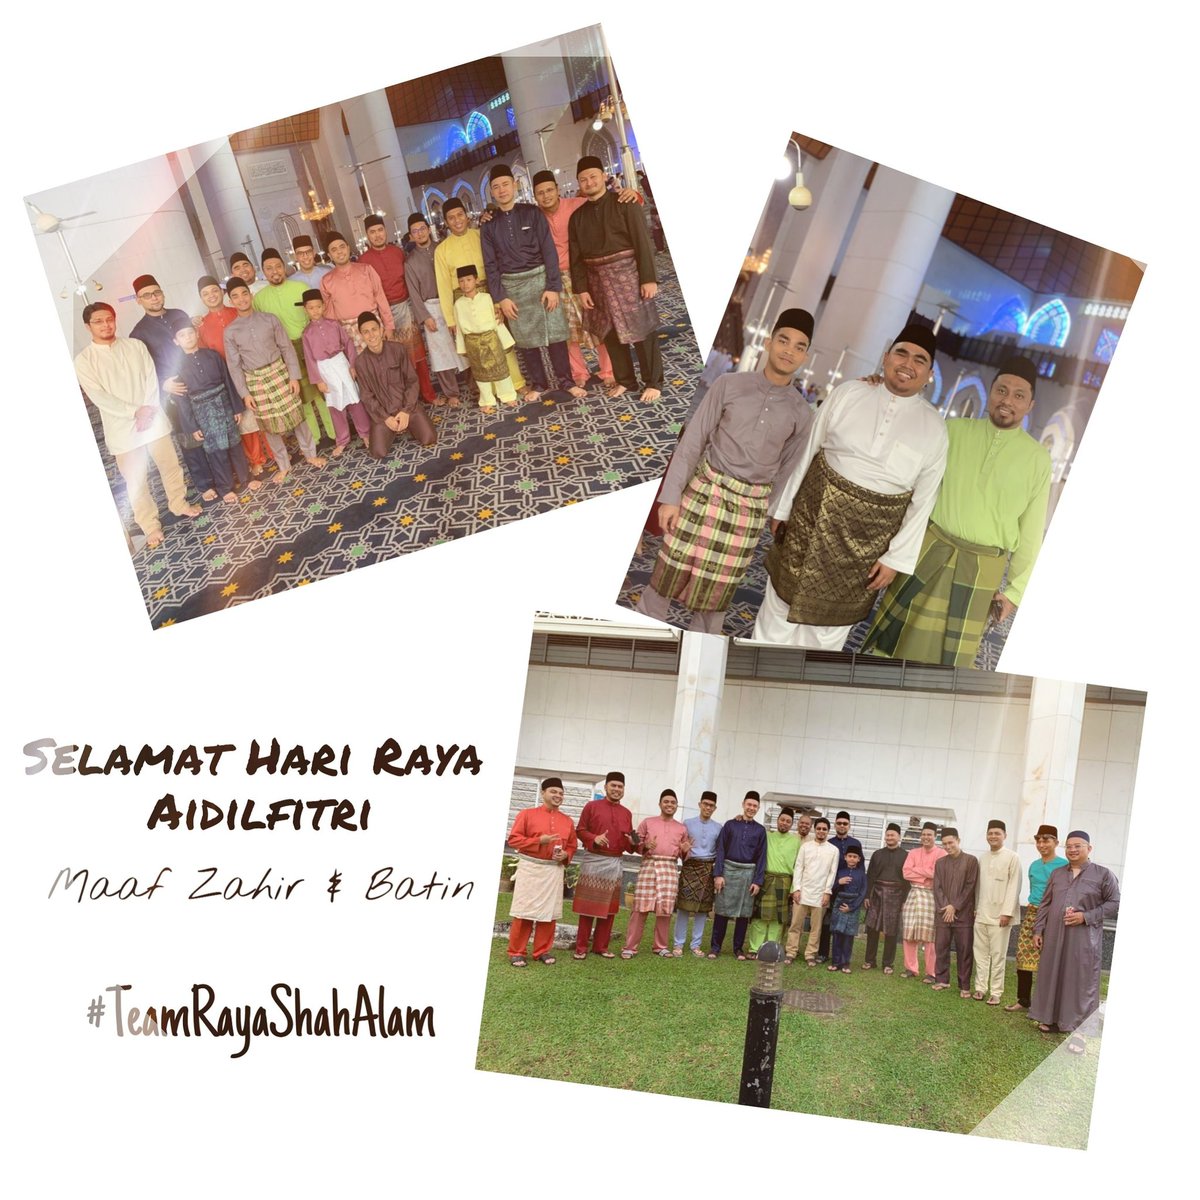 Selamat Hari Raya Aidilfitri, Maaf Zahir & Batin semua

Masih berpeluang sujud pagi Syawal dibumi Shah Alam, Selangor Darul Ehsan

#TeamRayaShahAlam 
#KitaBuatDia